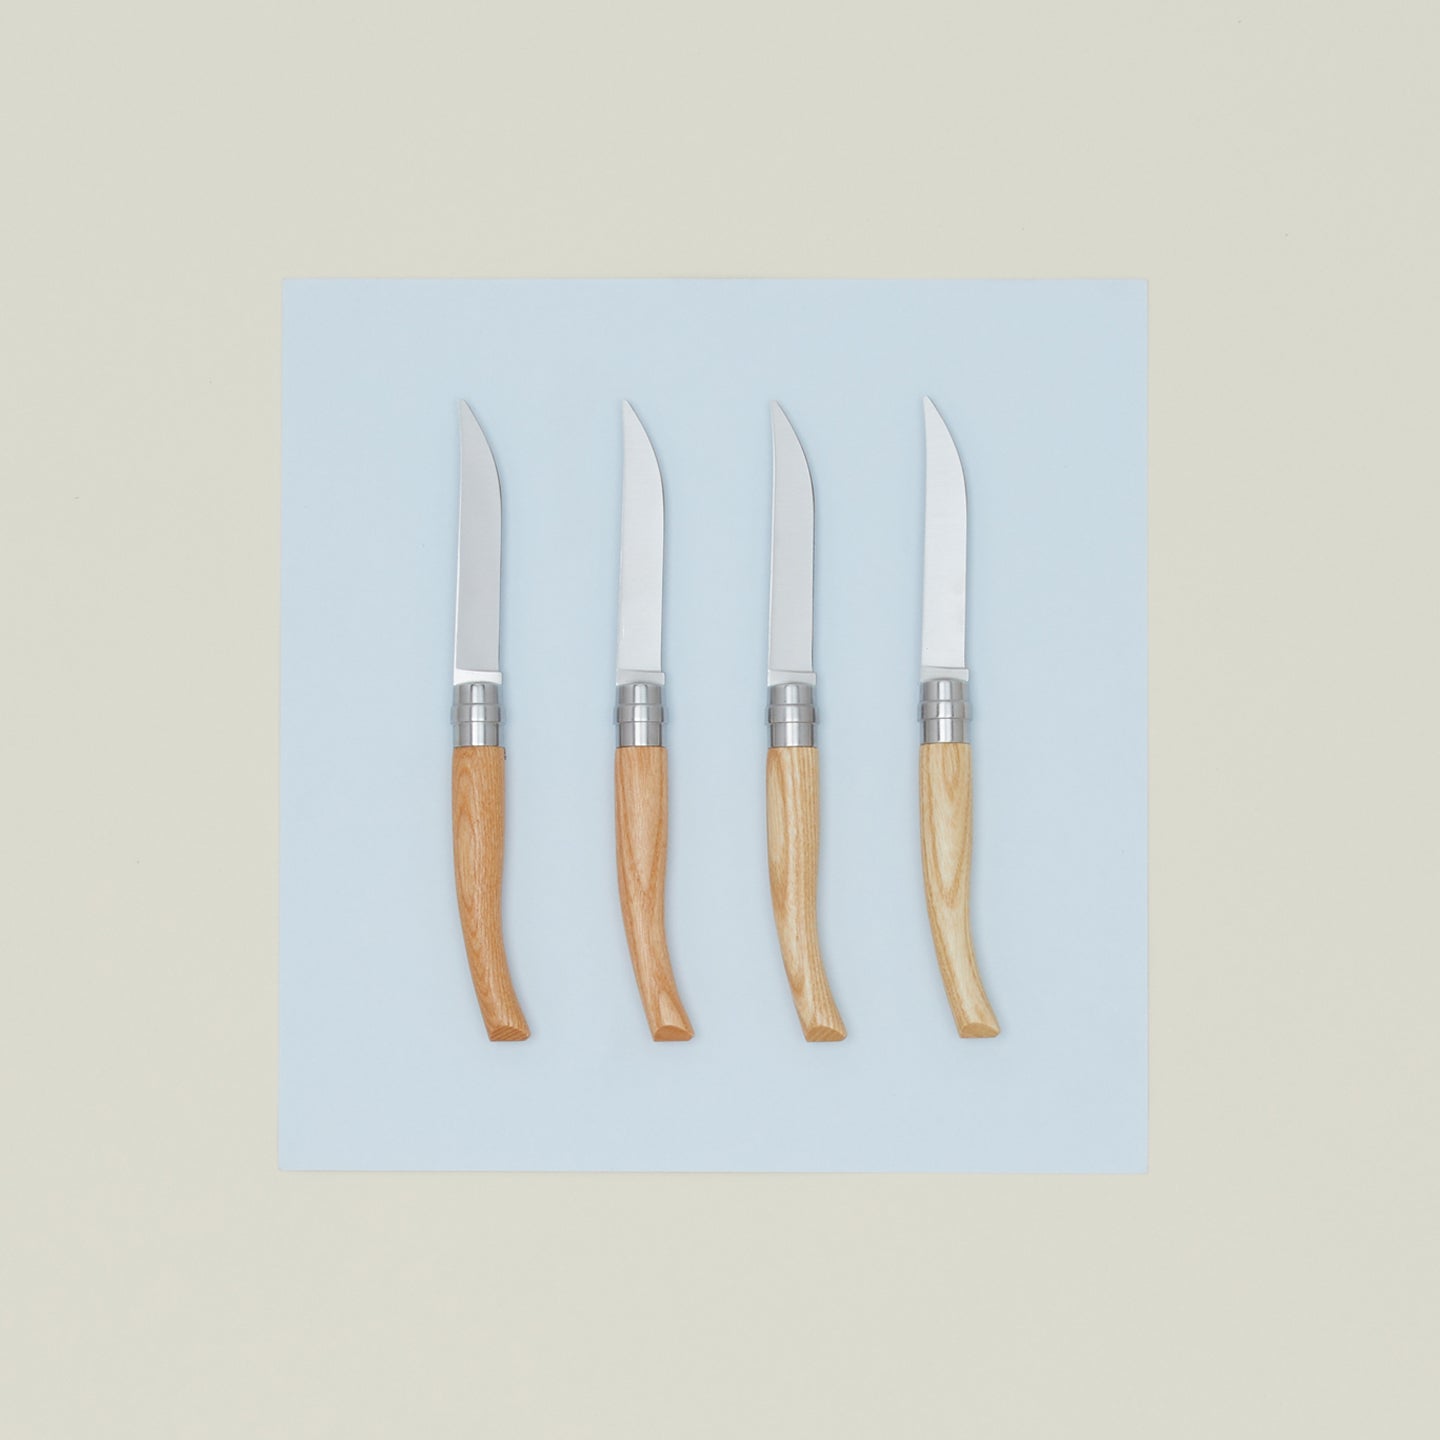 Ash Steak Knives, Set of 4